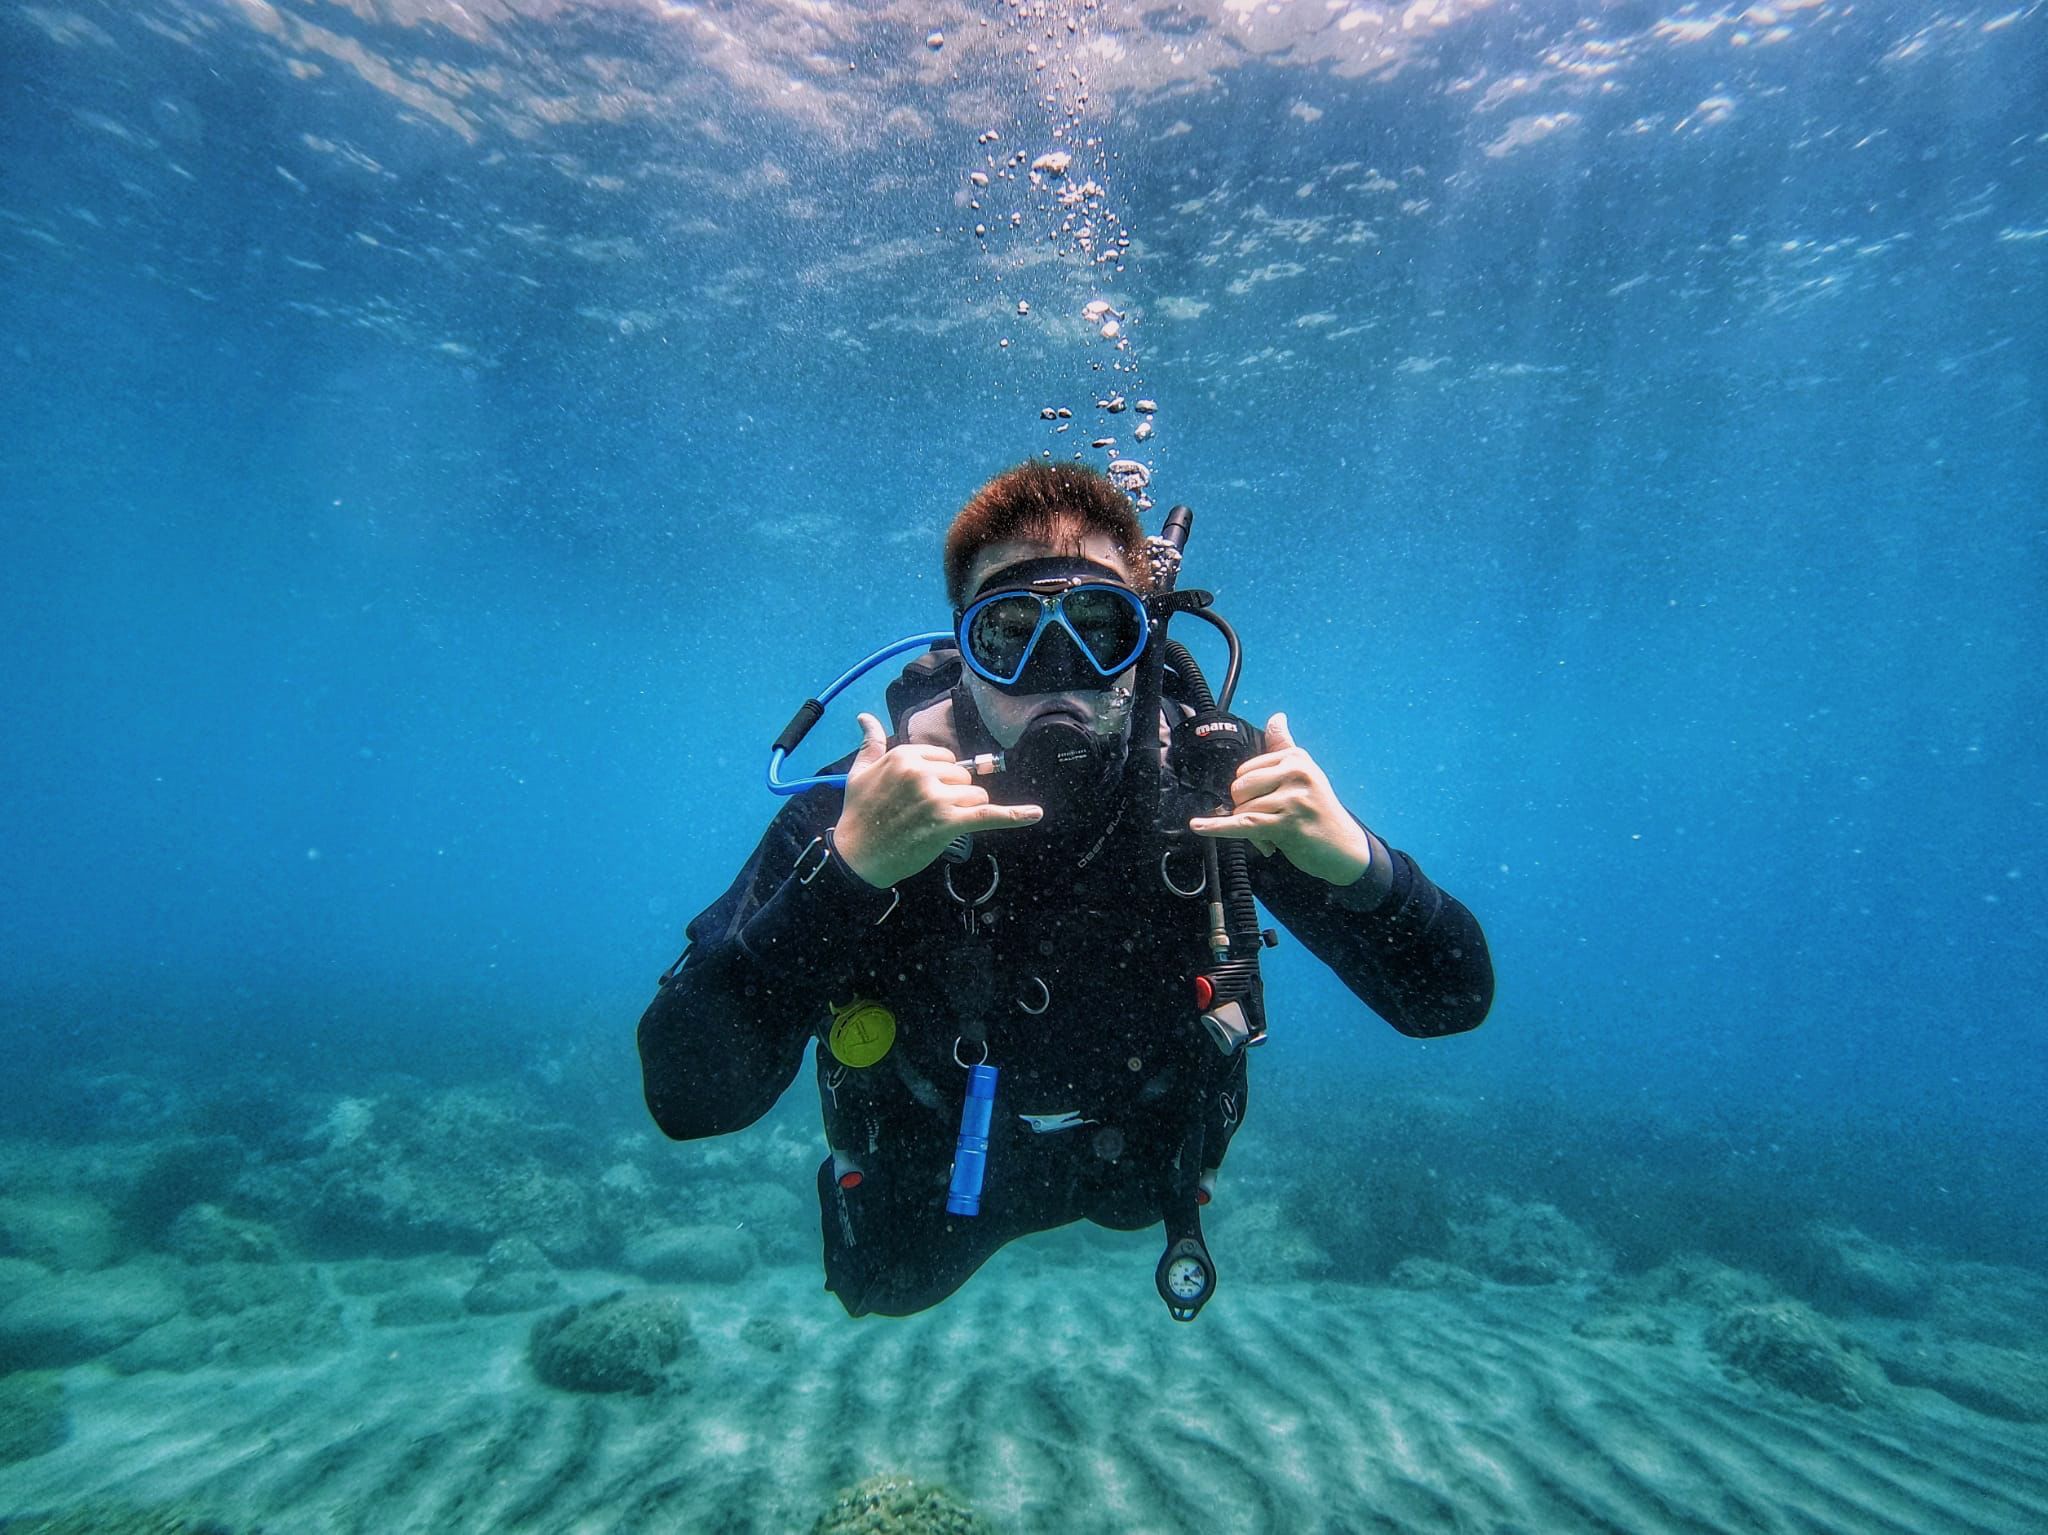 Tauchen Sie tief in Ihre Leidenschaften ein: Entdecken Sie Karrieren in der Unterwasserfotografie